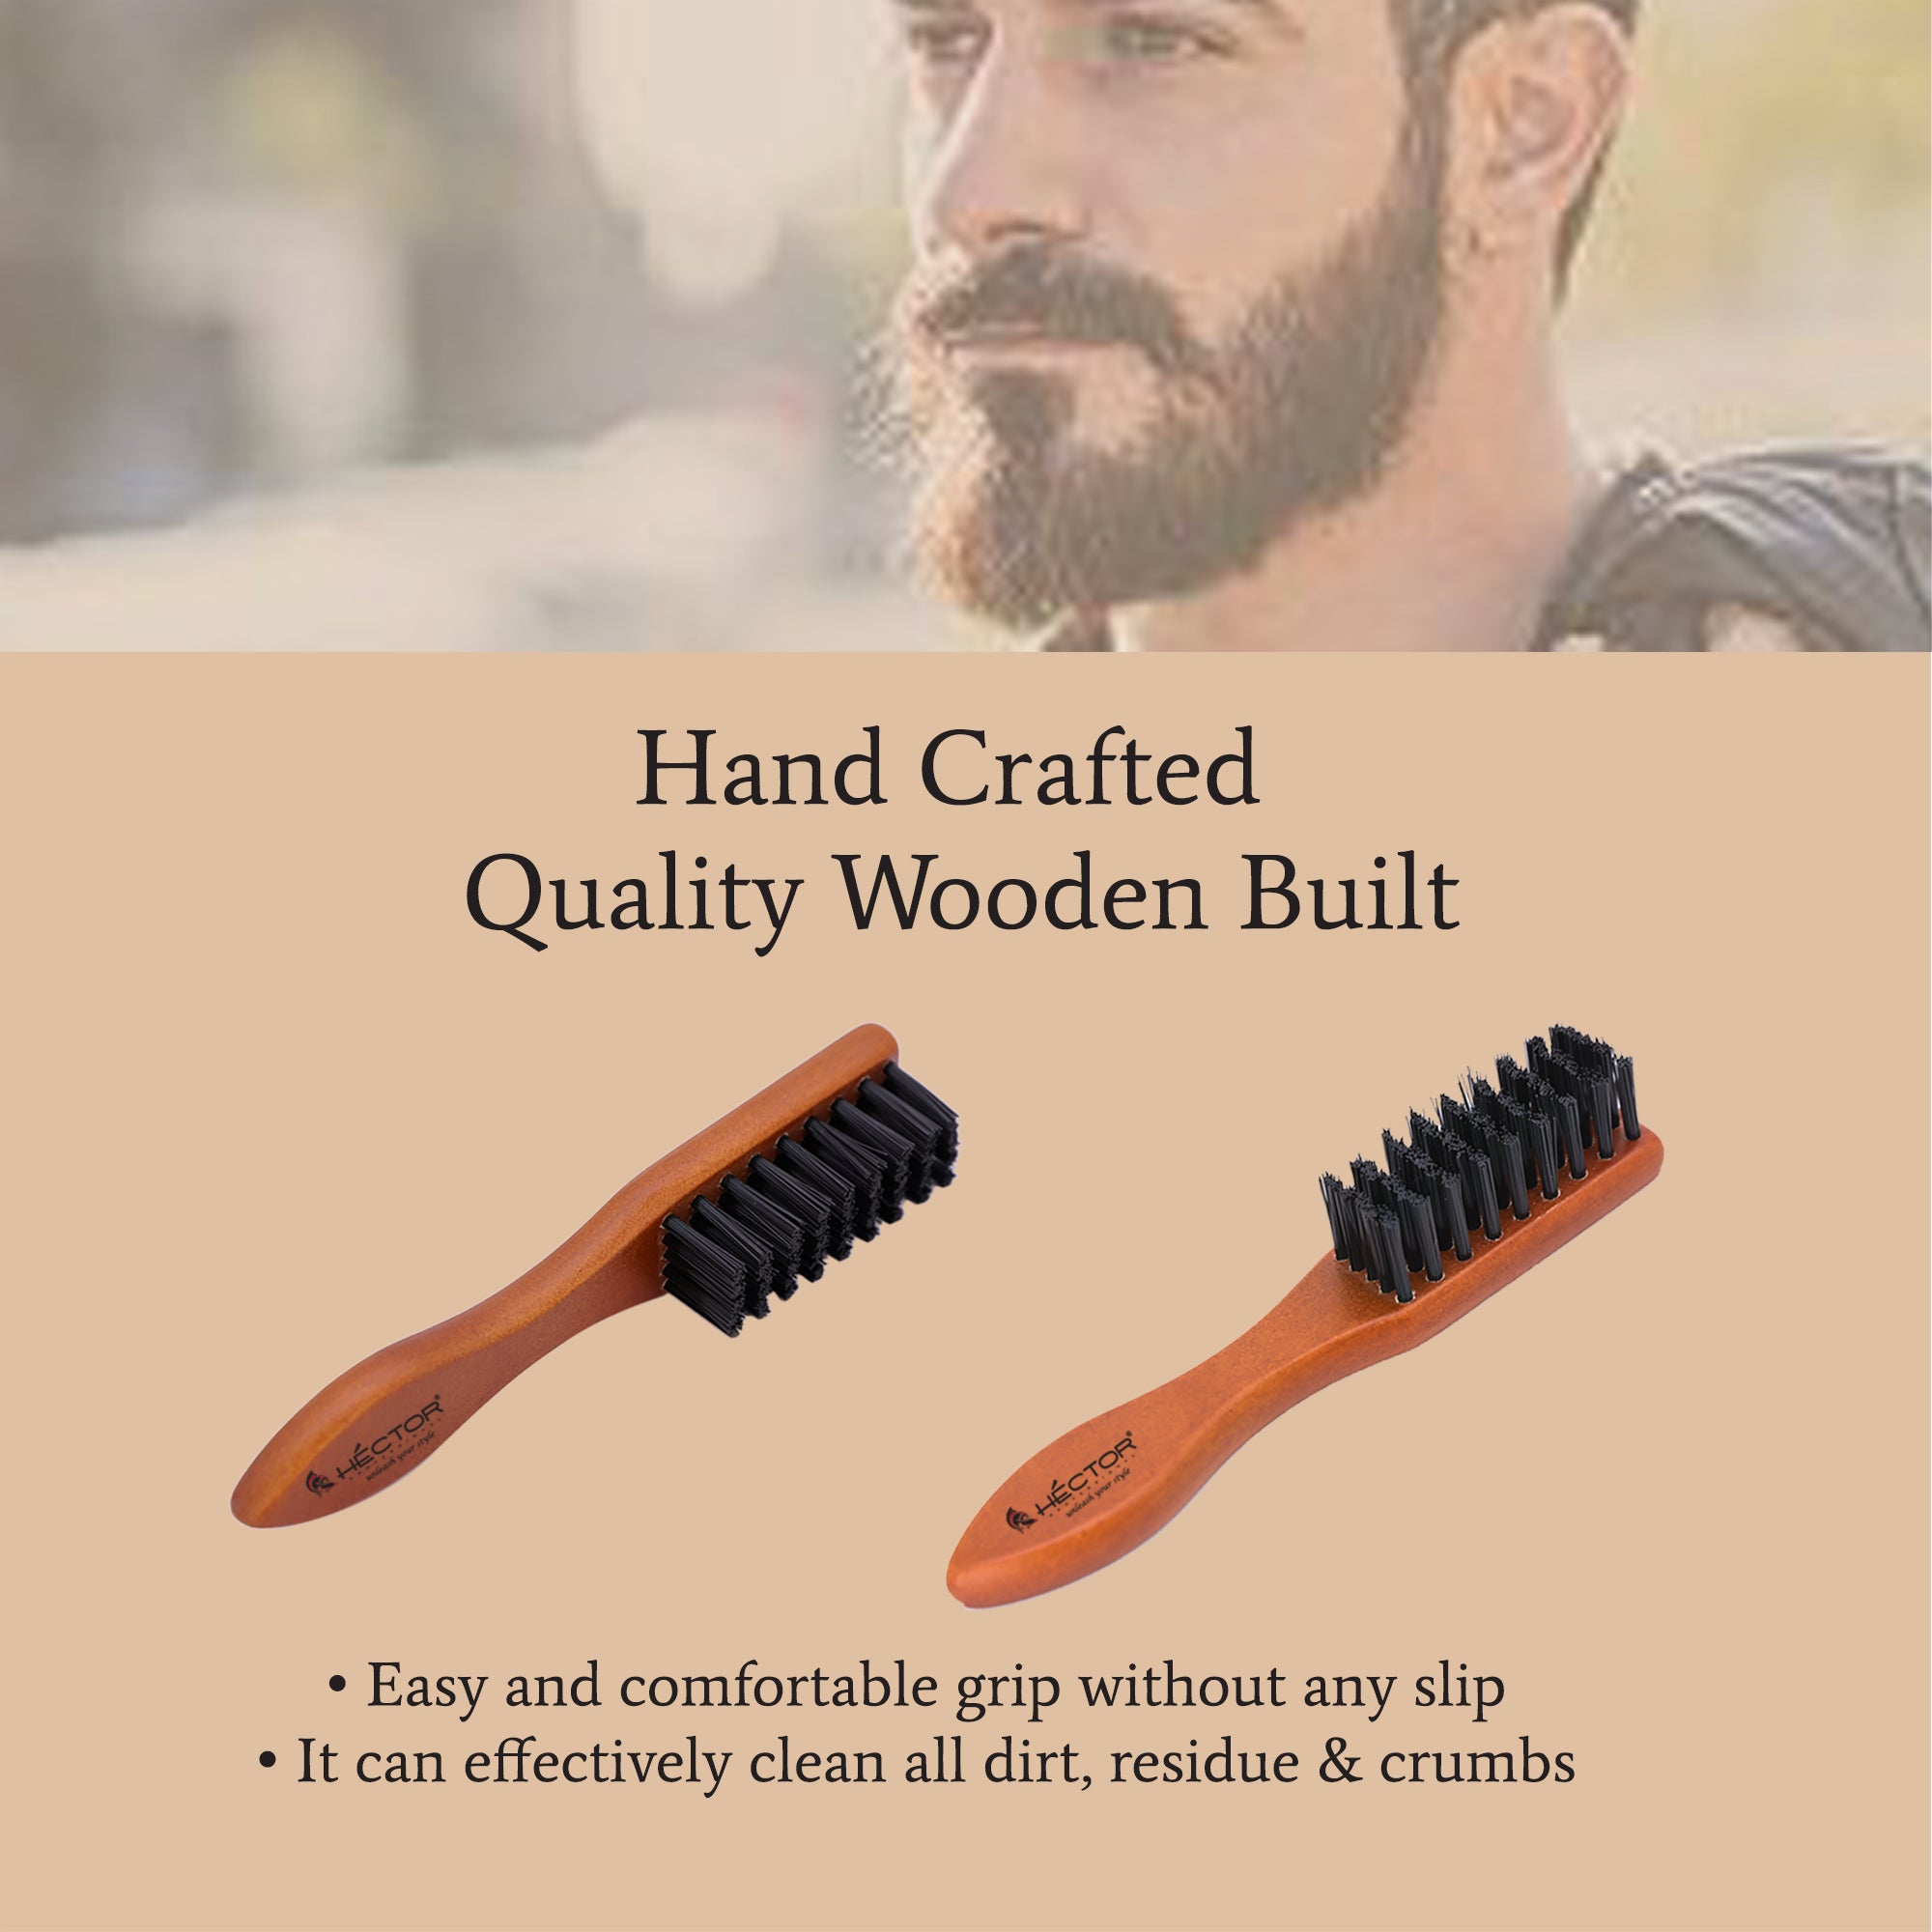 Hector Professional Wooden Beard Brush for Men, Straightens & Detangle Beard for Classy Looks | Pack of 2 Brushes